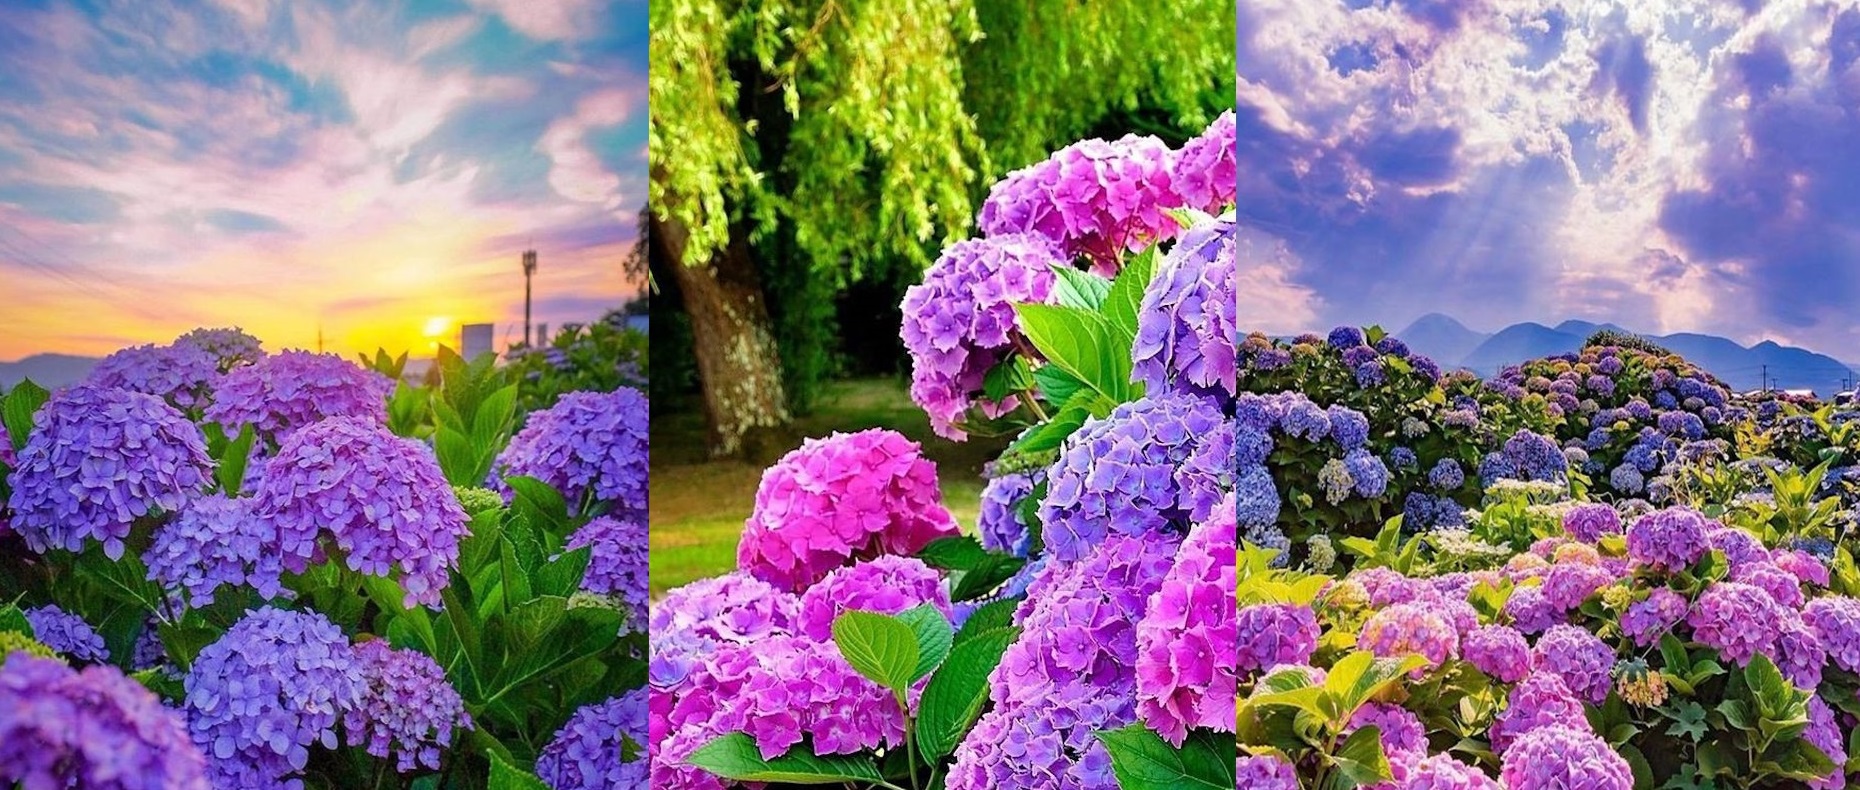 Cum sa provoci inflorirea hortensiilor pentru a crea un spectacol minunat colorat in gradina ta. GALERIE FOTO!